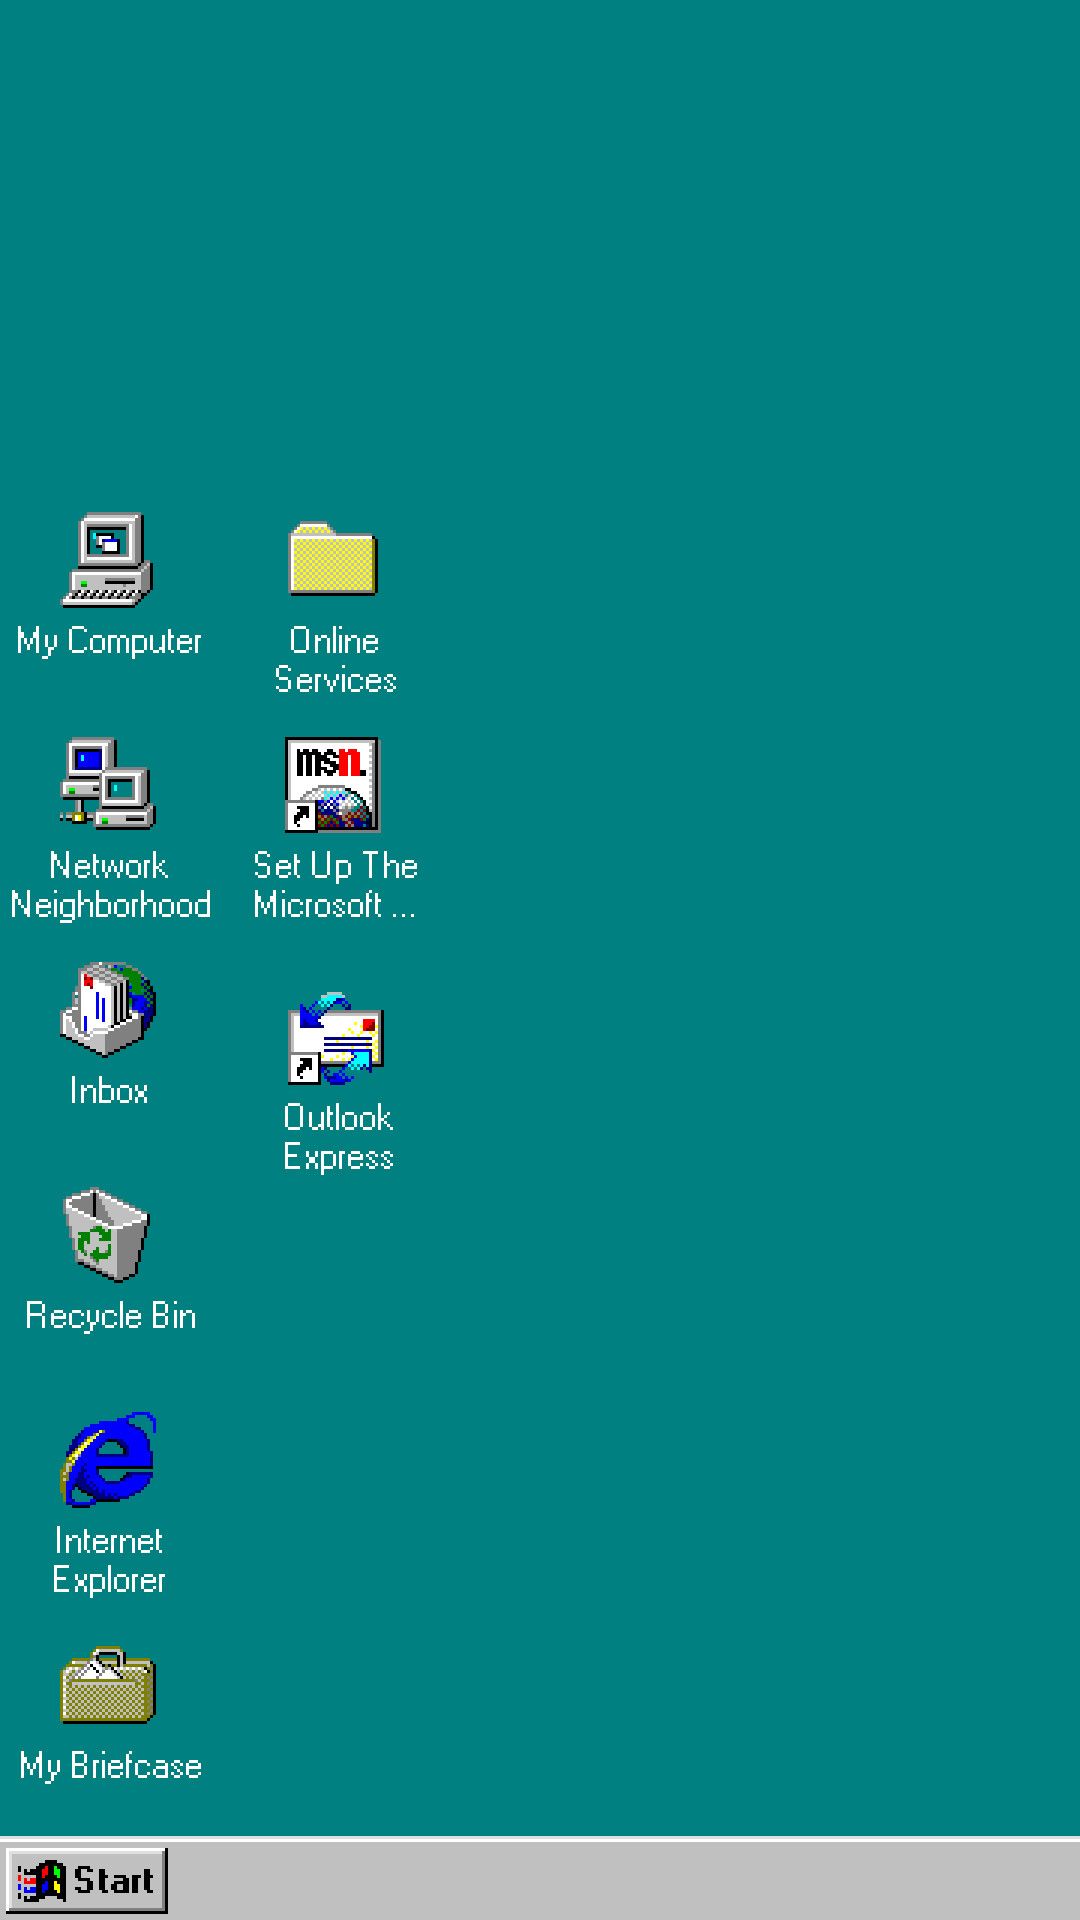 Bộ sưu tập hình nền Windows 98 với chủ đề mang tính cổ điển và hoài niệm sẽ lưu giữ lại cho bạn những khoảnh khắc đáng nhớ về chiếc máy tính hoài cổ của mình. Nhiều hình nền tuyệt đẹp và đặc biệt giúp bạn thay đổi giao diện thường xuyên, mang đến sự mới mẻ mỗi ngày.